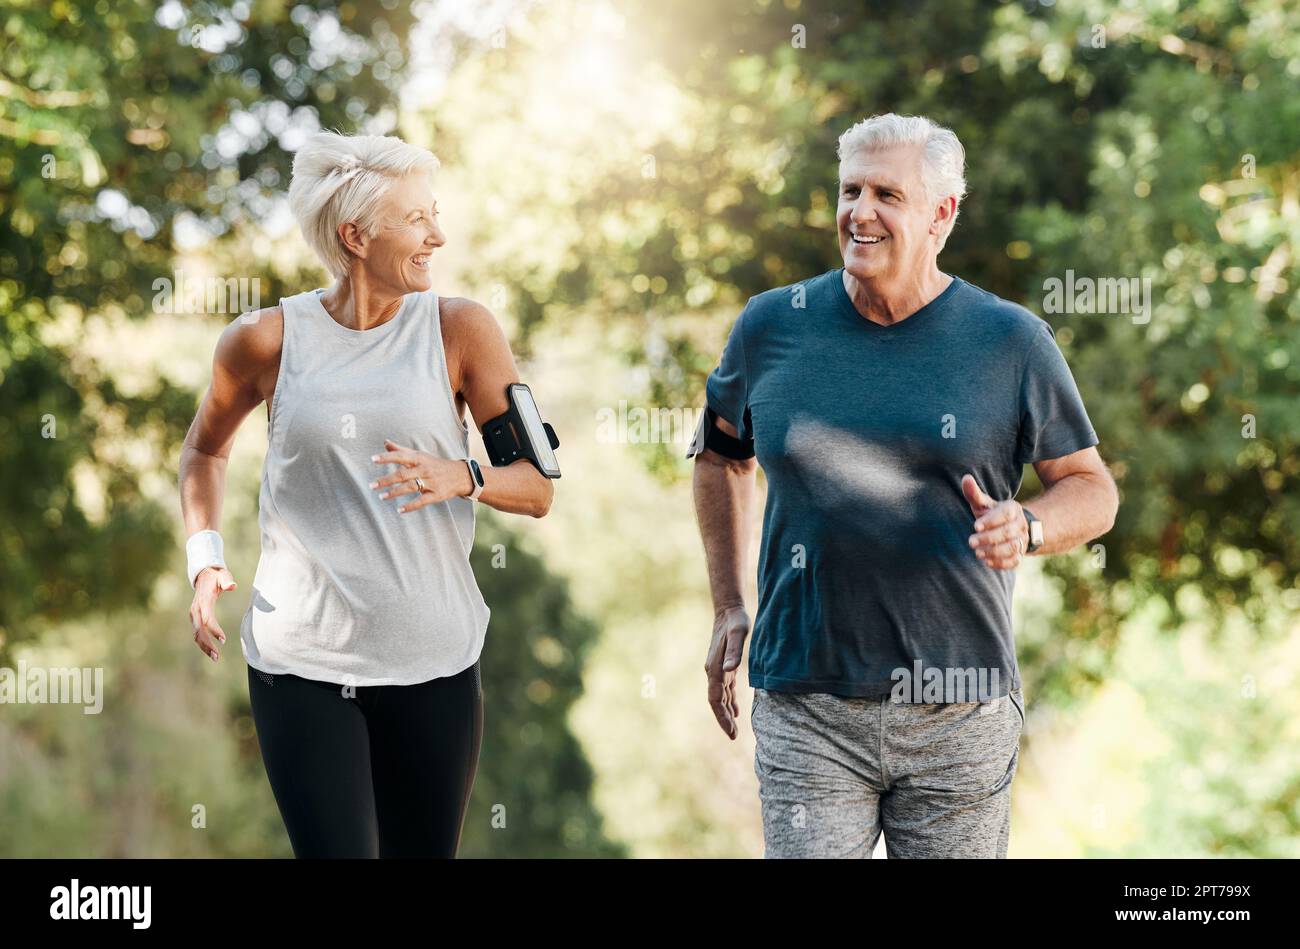 Gesundheit, Seniorenpaar und Laufen in der Natur oder Park für Bewegung,  Fitness und Wellness. Senioren, ältere Männer und Frauen genießen  Spaziergänge, frische Luft und t Stockfotografie - Alamy